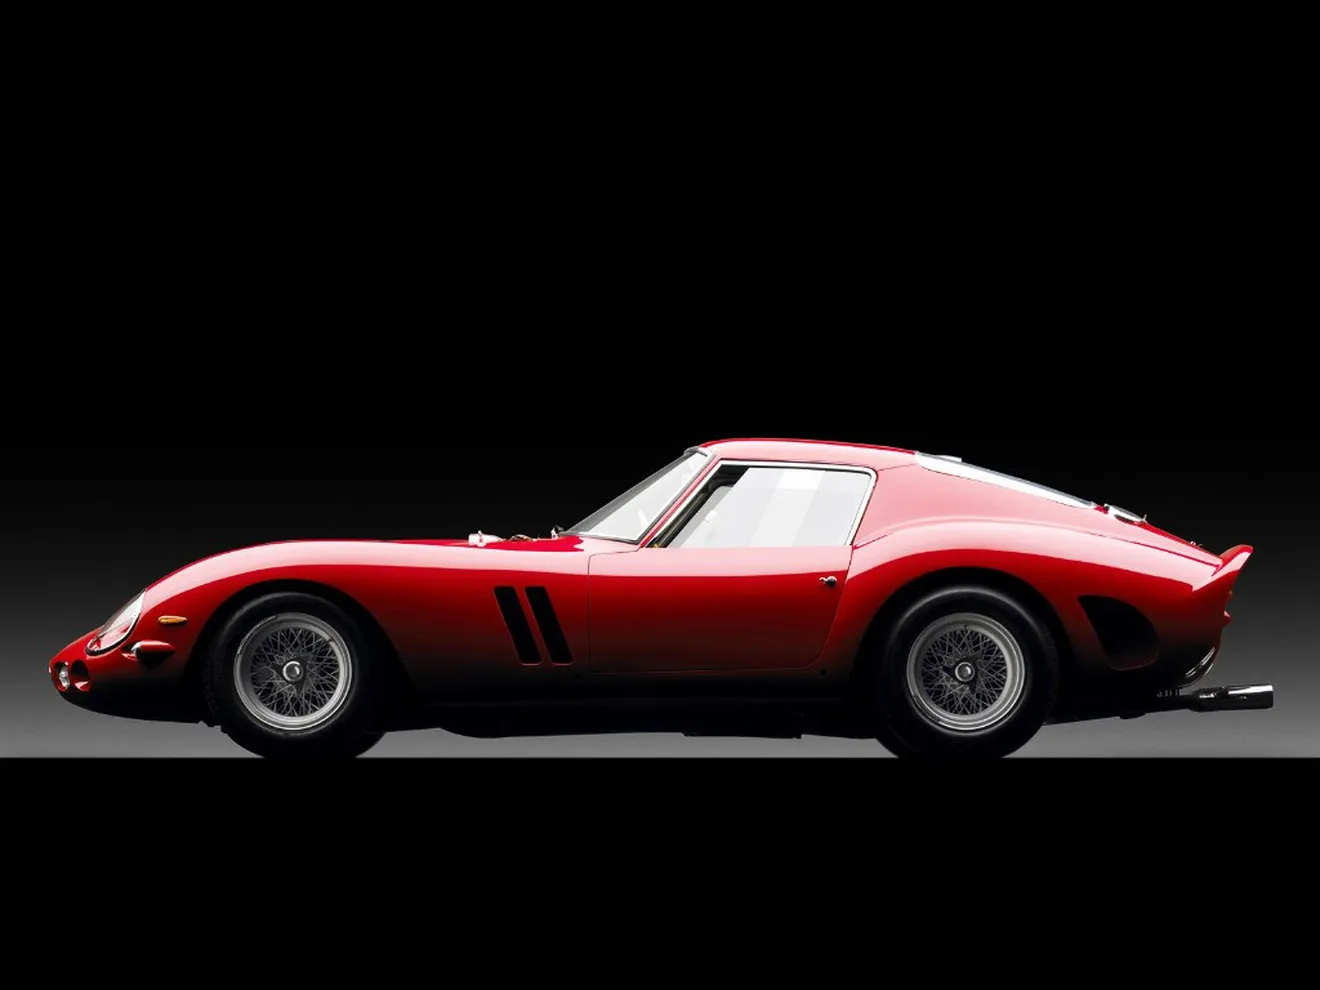 Ferrari pondera fabricar una nueva edición del legendario 250 GTO